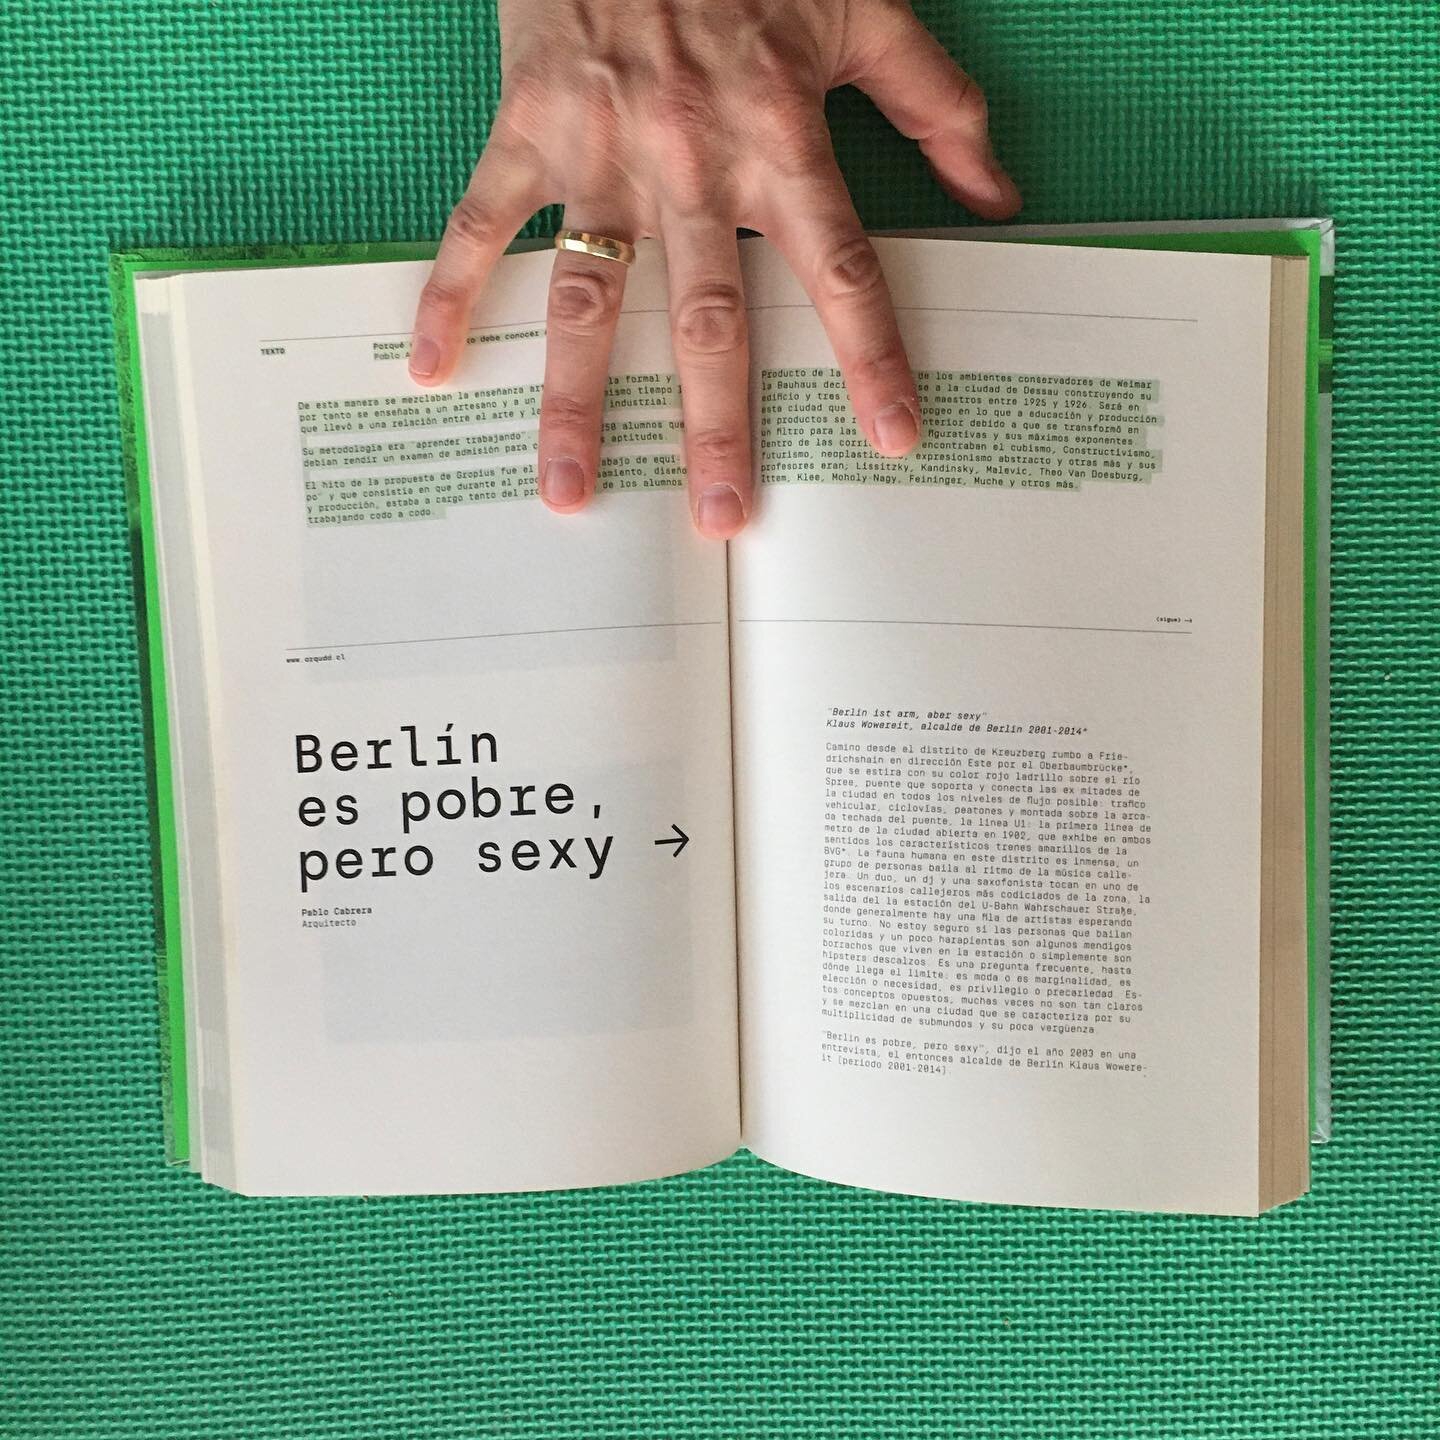 &laquo;#Berlin es pobre, pero sexy&raquo;
Para el libro ~Berl&iacute;n &bull; Serie Trayectorias~ de @arquitecturaudd. Con el apoyo de @stoq_editorial.